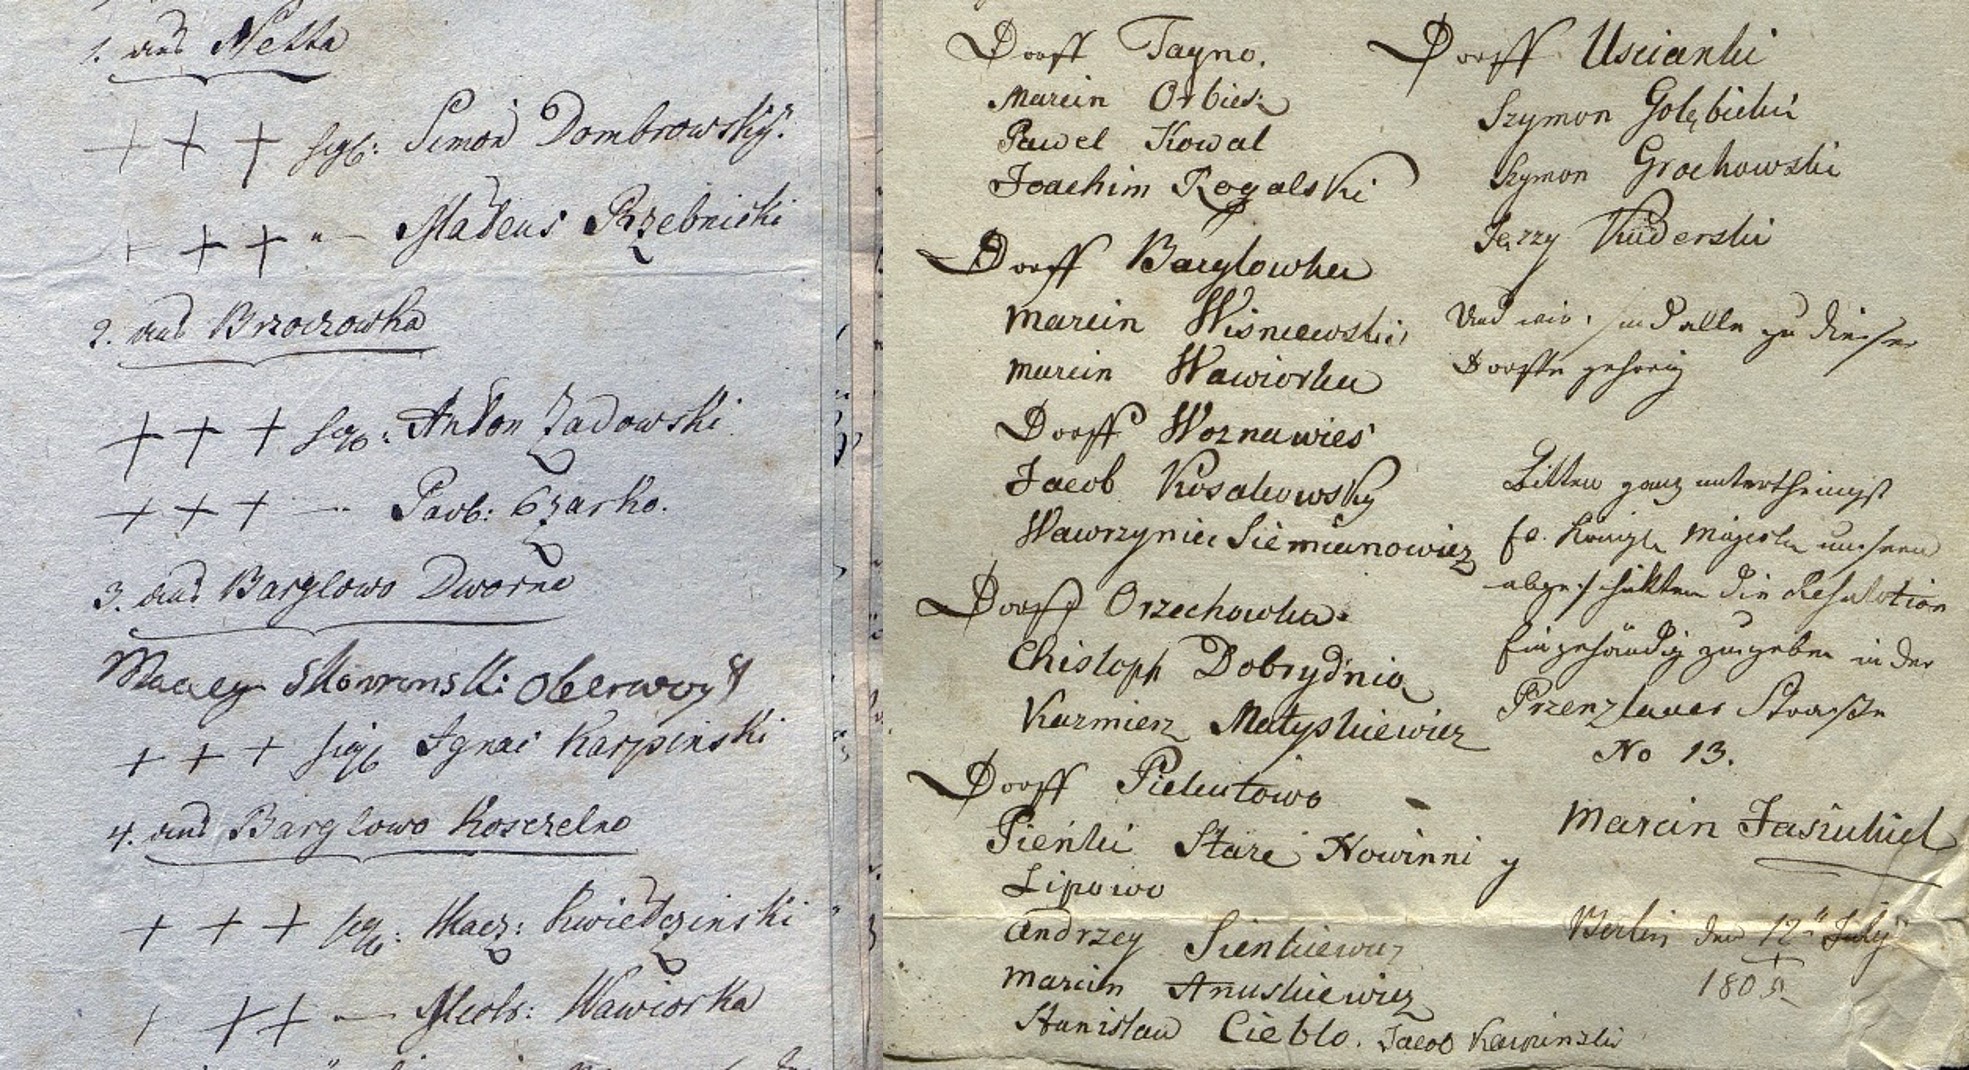 Przykłady z dwóch dokumentów cywilnych z 1805 r., gdy obszar ten był czasowo kontrolowany przez Prusy, tzw. Nowe Prusy Wschodnie (1797–1805). Dokument po lewej pokazuje użycie xxx, a następnie imiona zapisane tym samym pismem odręcznym. Zwróć uwagę, że jedno nazwisko, Maciej Skorwoński, oberwójt z Bargłowa Dwornego, nie ma znaków x i jest napisane innym charakterem pisma, co wskazuje na faktyczny podpis. Dokument po prawej stronie nie używa znaków x, ale wszystkie podpisy świadków są ewidentnie zapisane tym samym charakterem pisma.